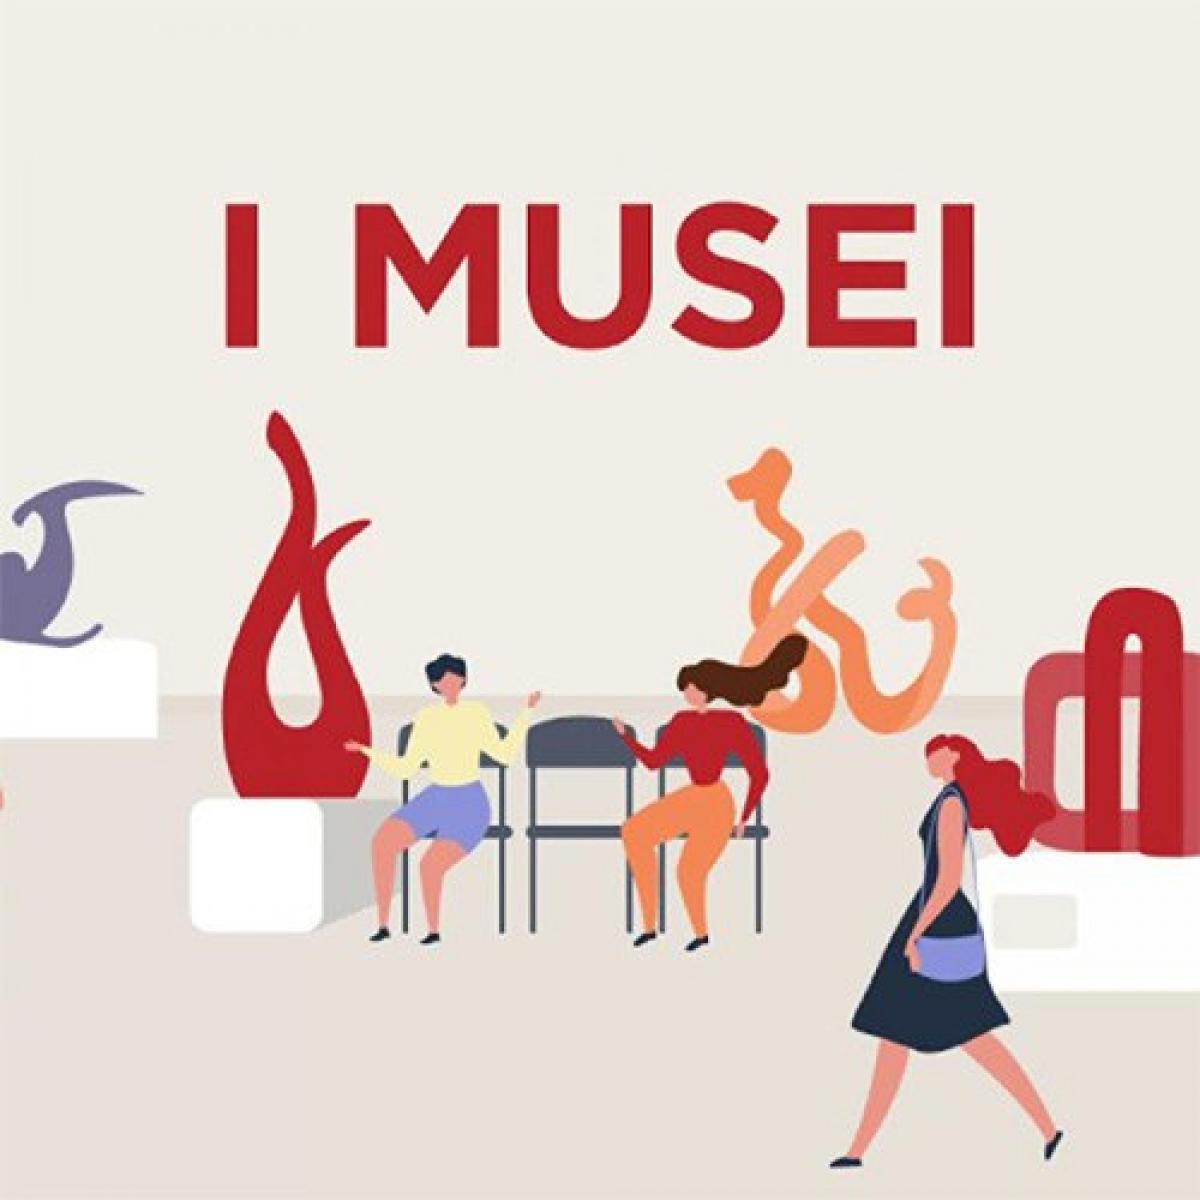 I musei